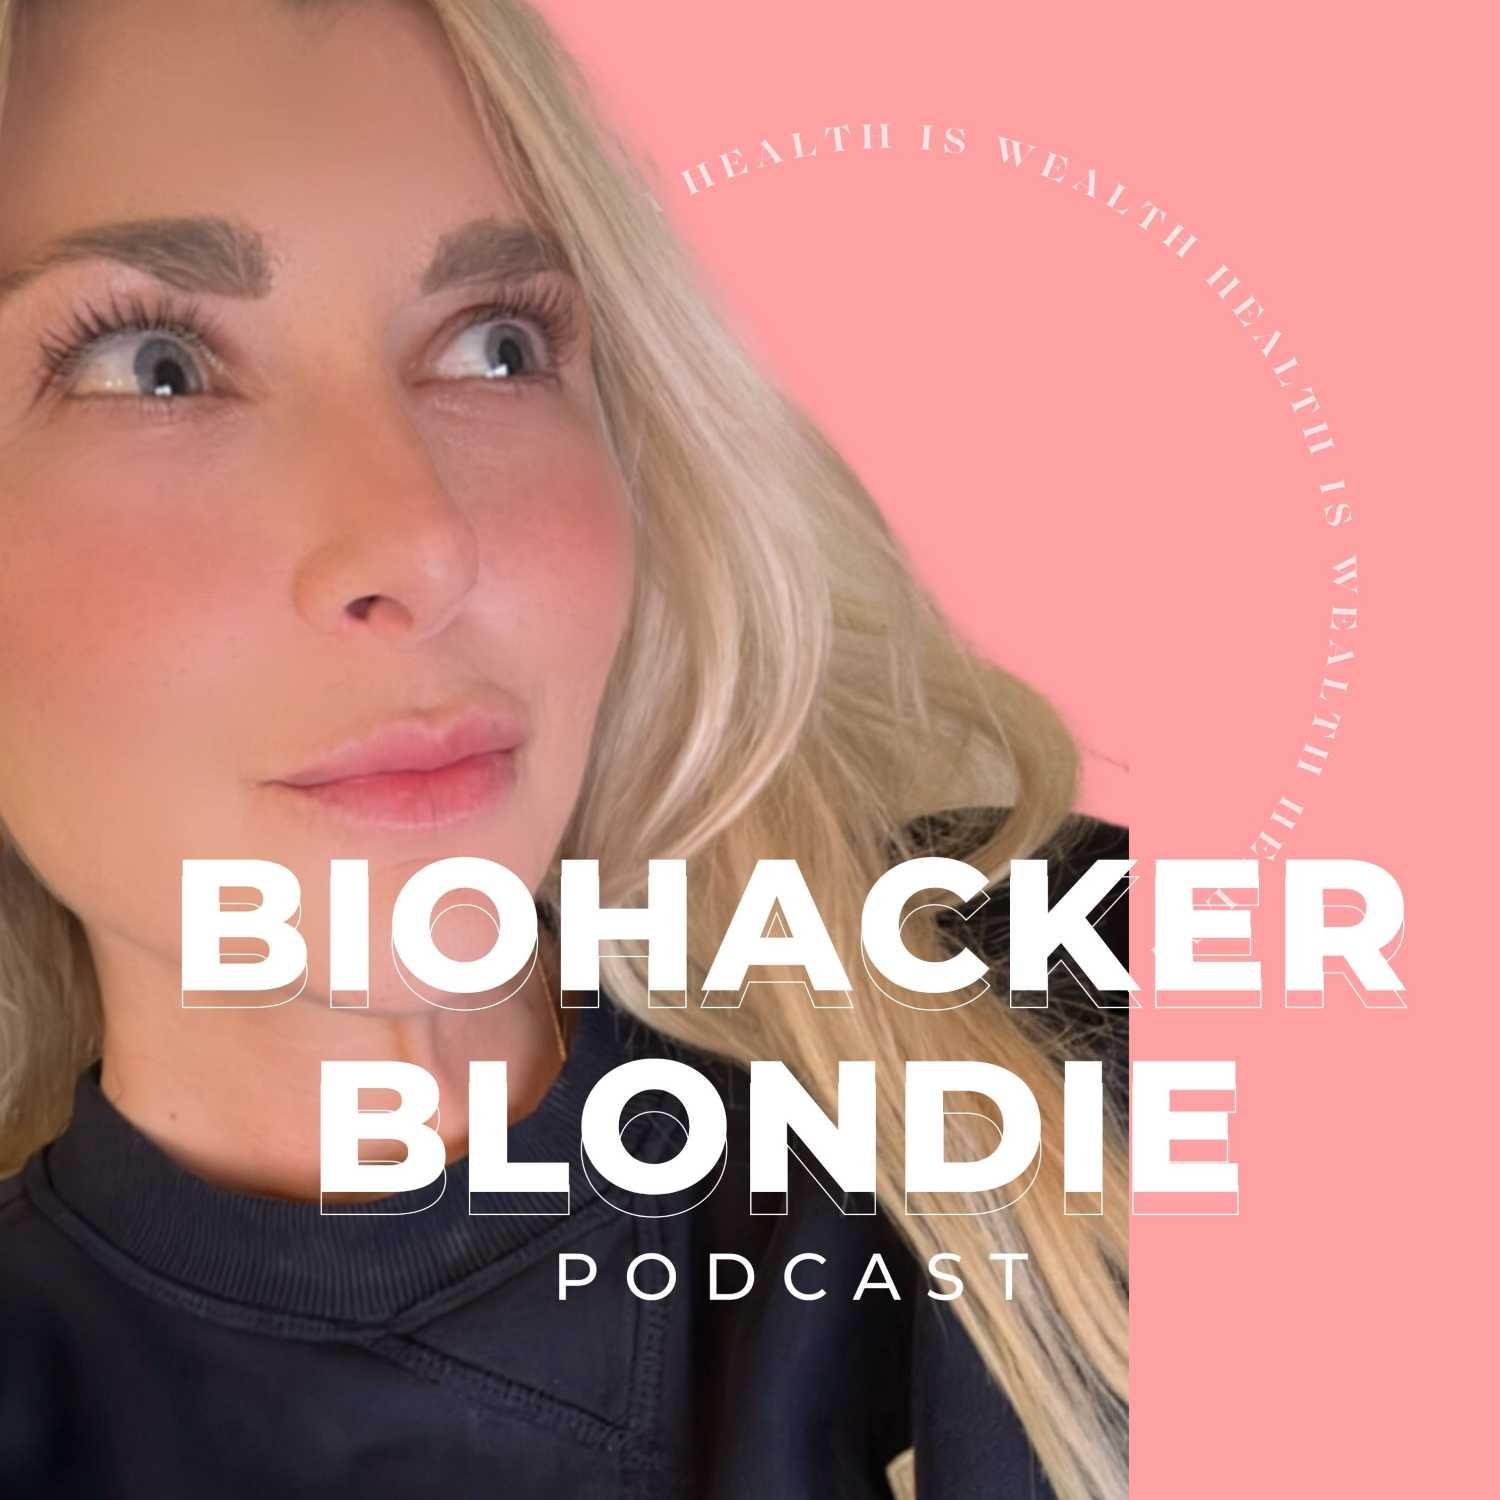 BiohackerBlondie Podcast